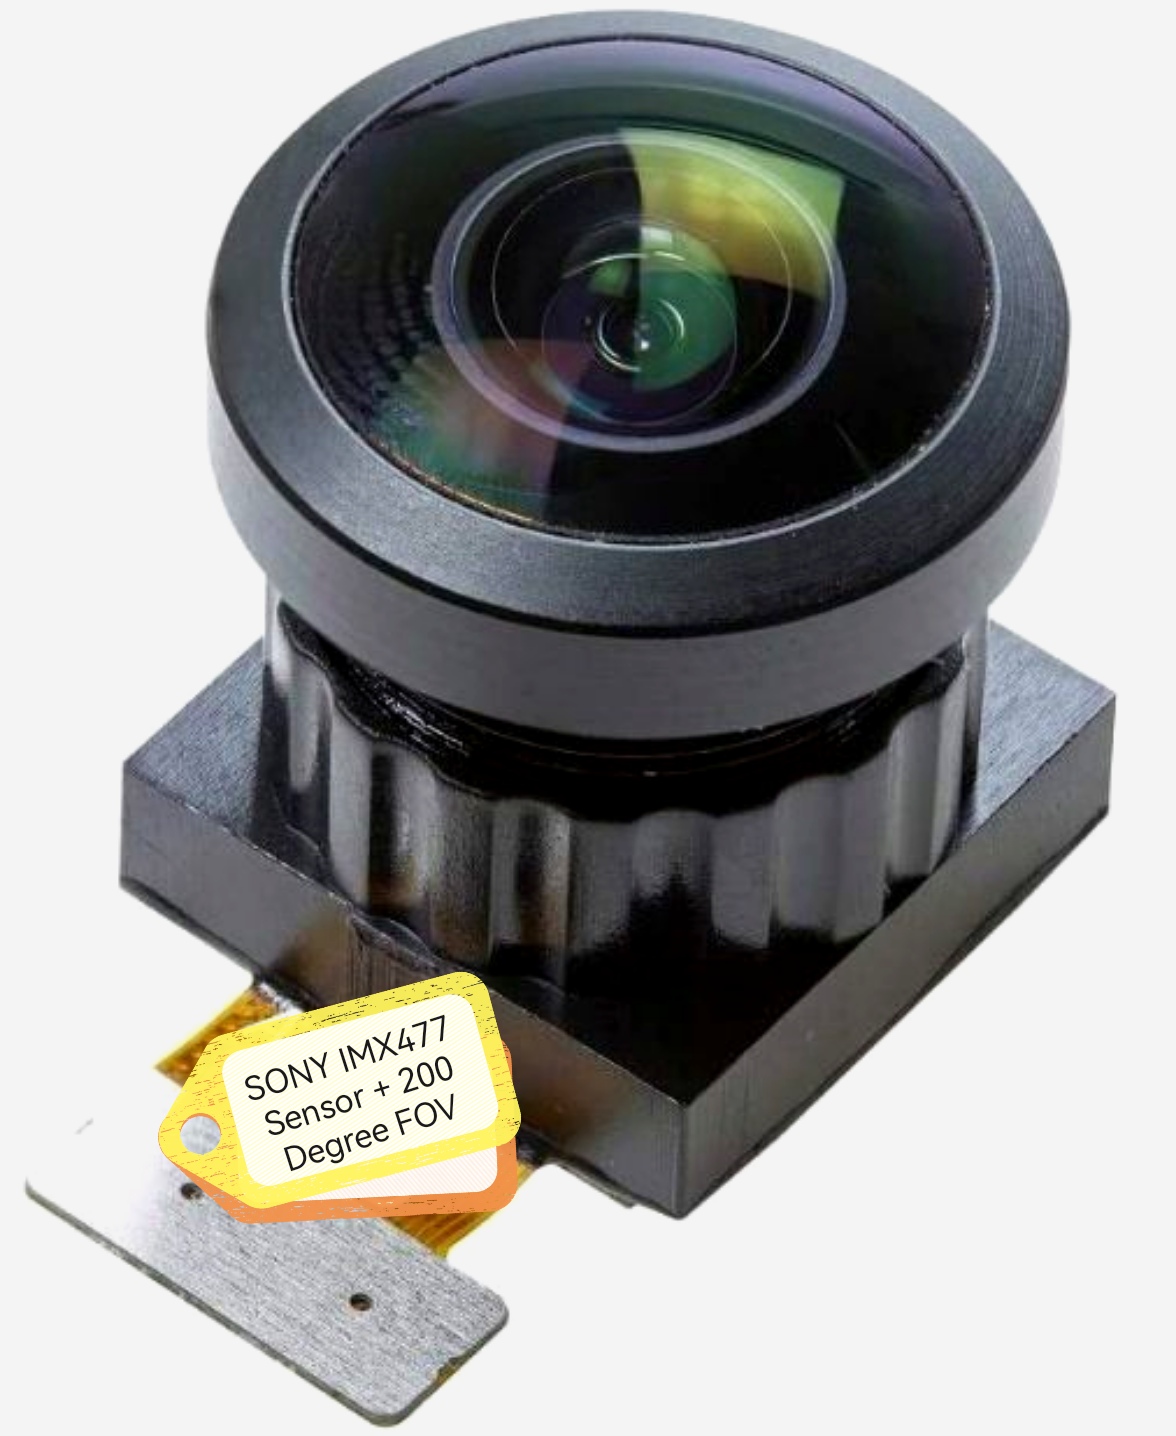 12MP 광각 카메라 모듈, 200도 FOV의 SONY IMX477 센서